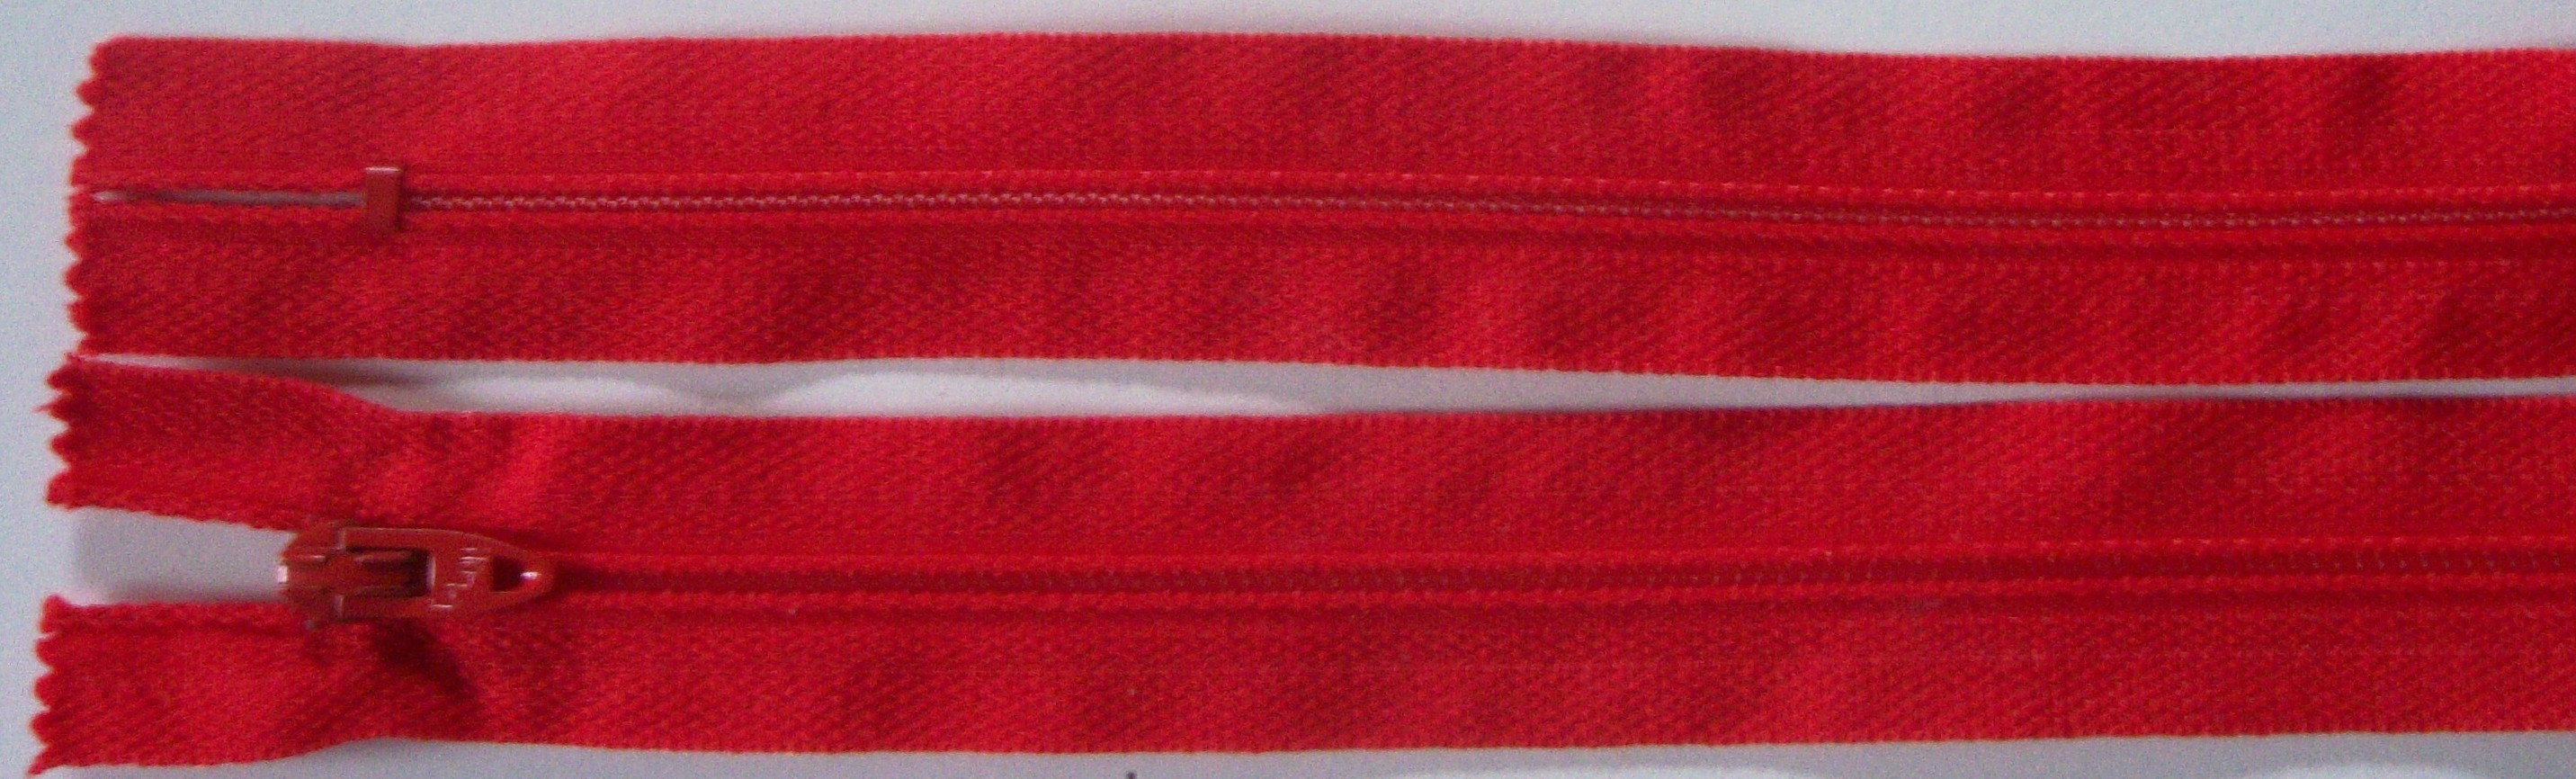 Scarlet Talon 6.5" Nylon Coil Zipper